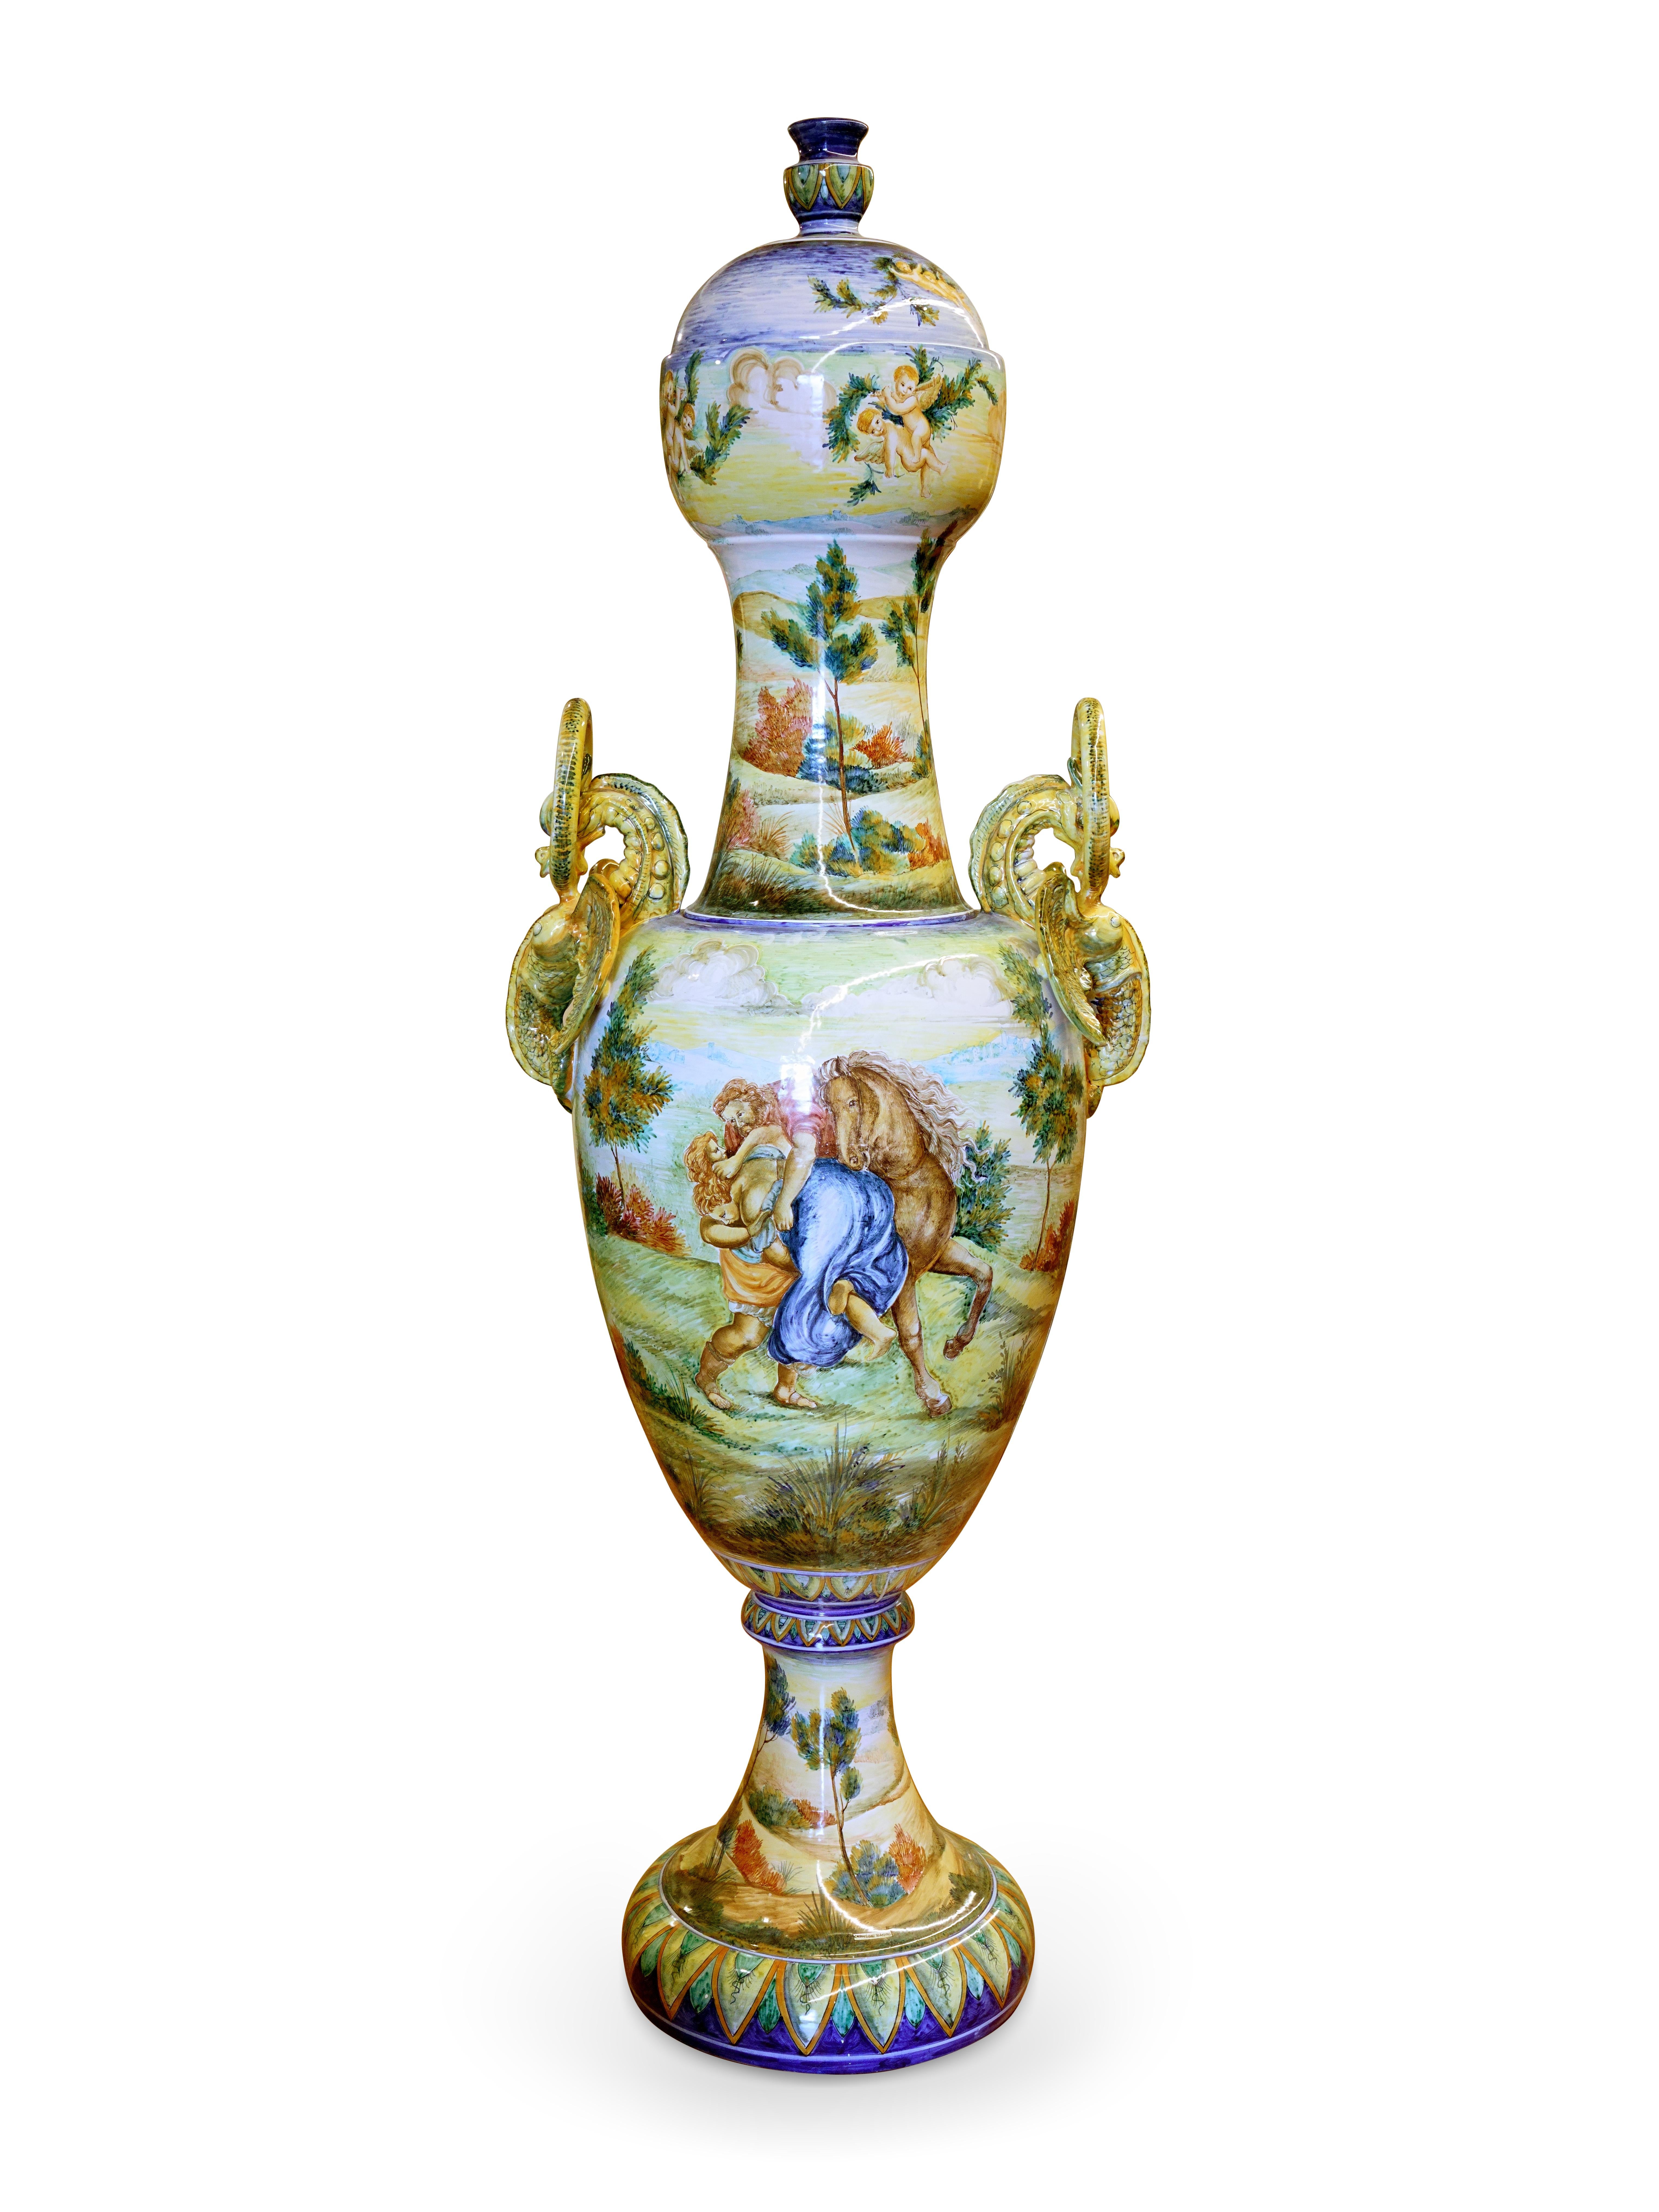 Majestic vase Amphora en majolique, d'une hauteur de 200 cm (78,7 in) et d'un diamètre de 70 cm (27,5 in) : une pièce unique, entièrement réalisée et peinte à la main à Gubbio, en Italie centrale, en 1993. Sa surface est décorée d'une reproduction